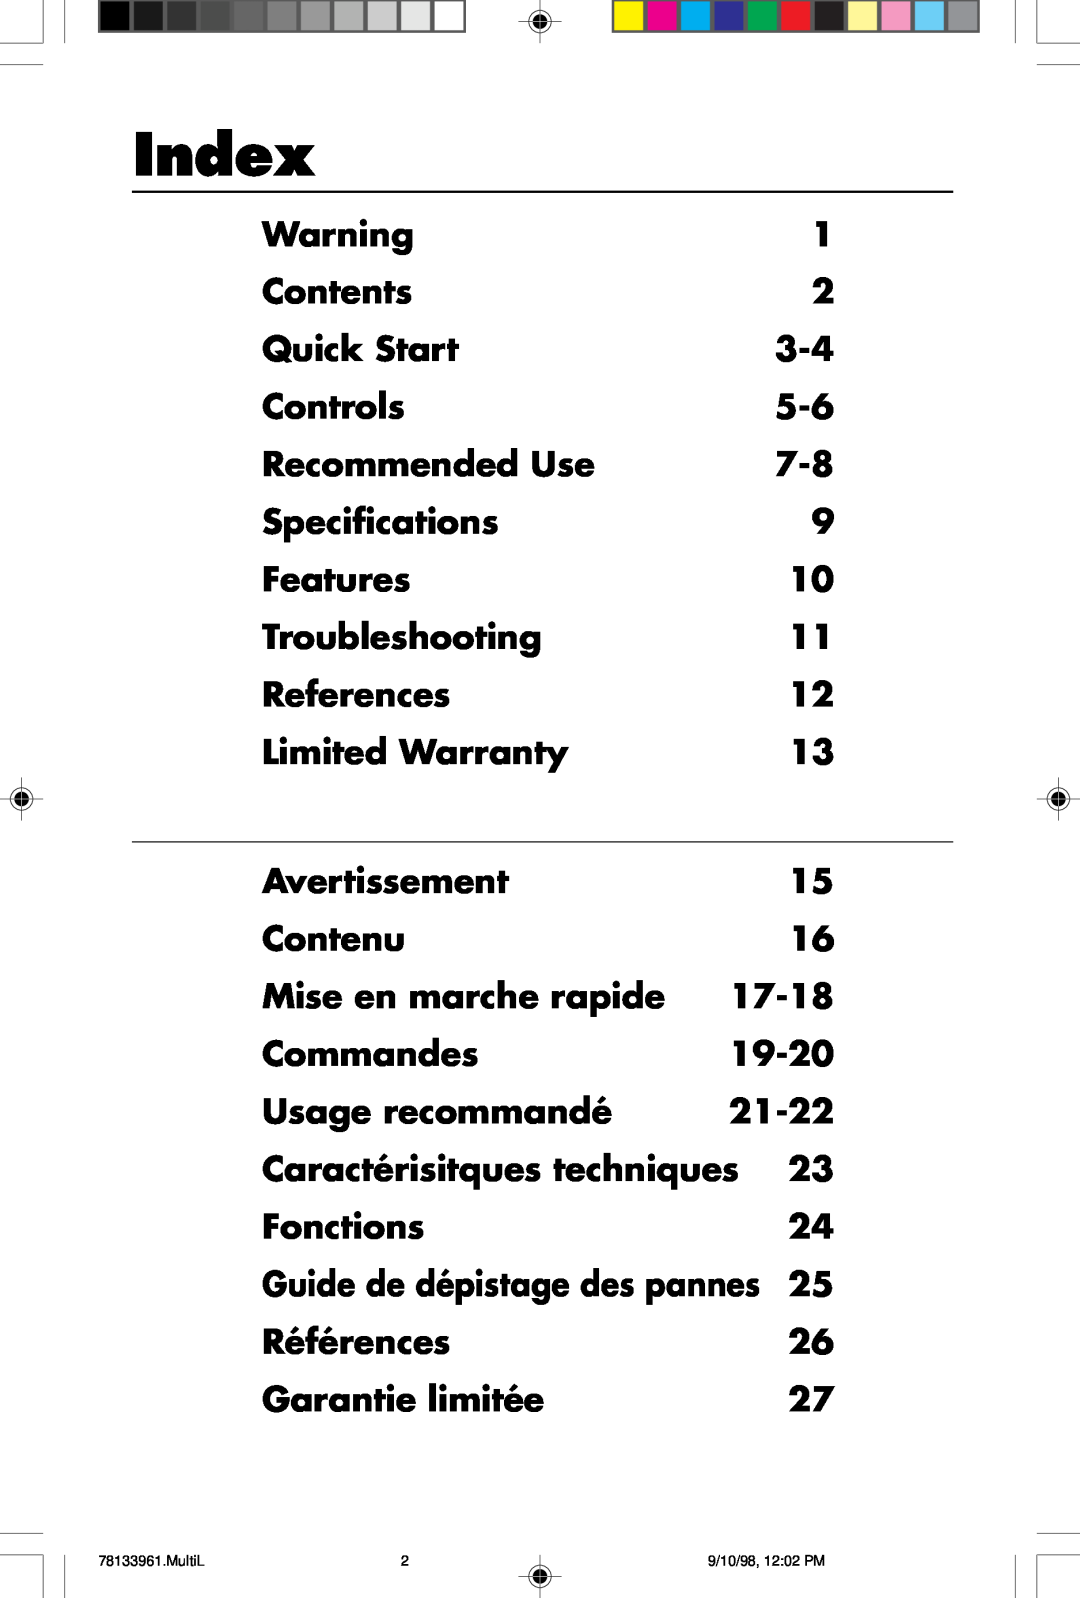 NEC A900 user manual Index 